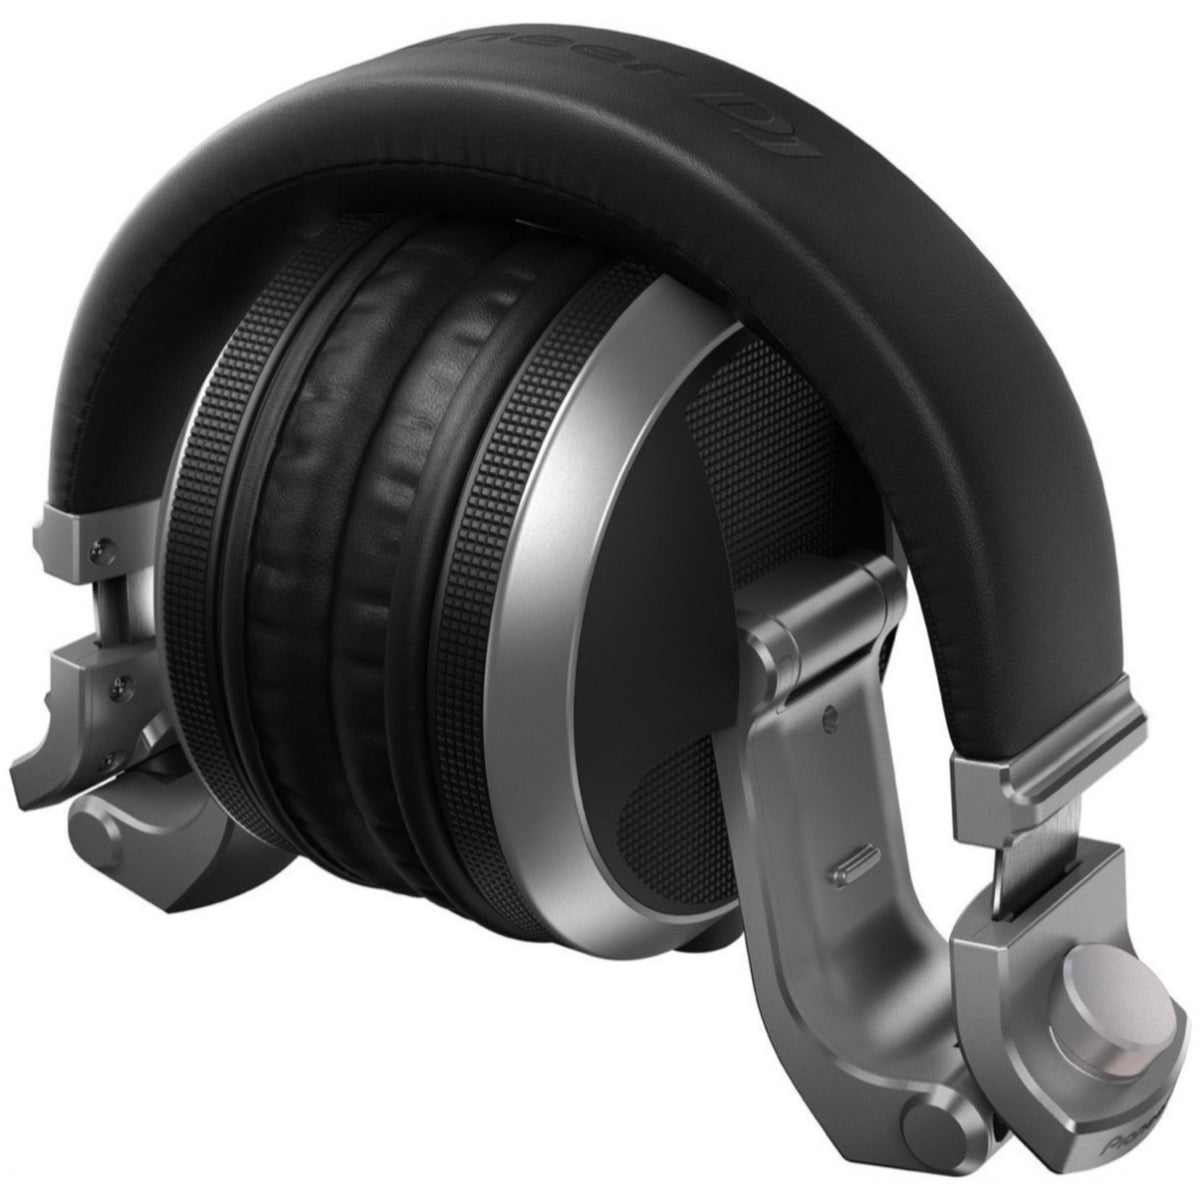 Pioneer DJ HDJ-X5 DJ Headphones, Silver